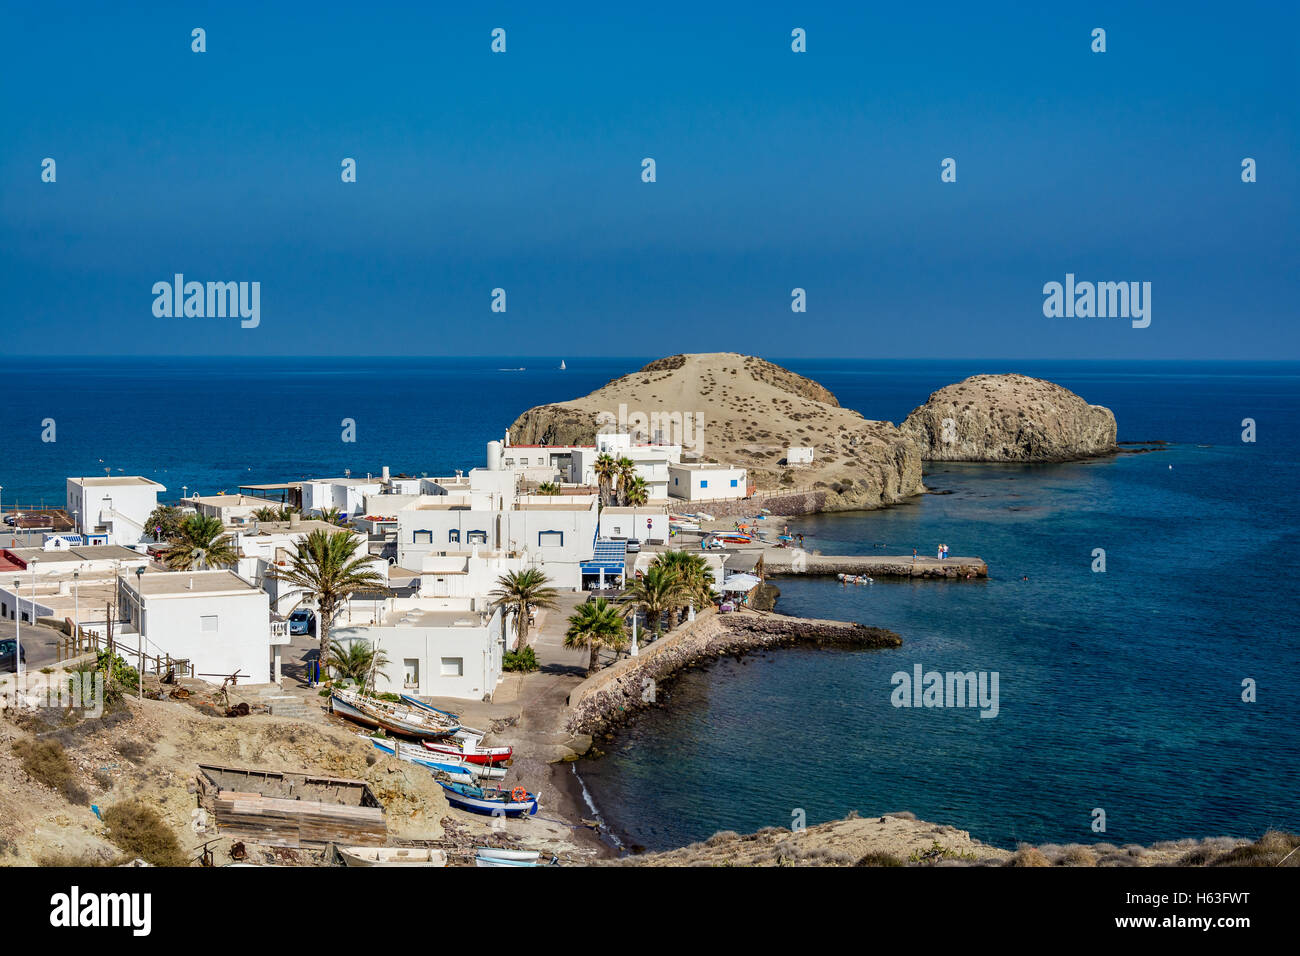 View of Isleta del Moro, a picturesque town in Cabo de Gata national park, Almeria region, Spain Stock Photo